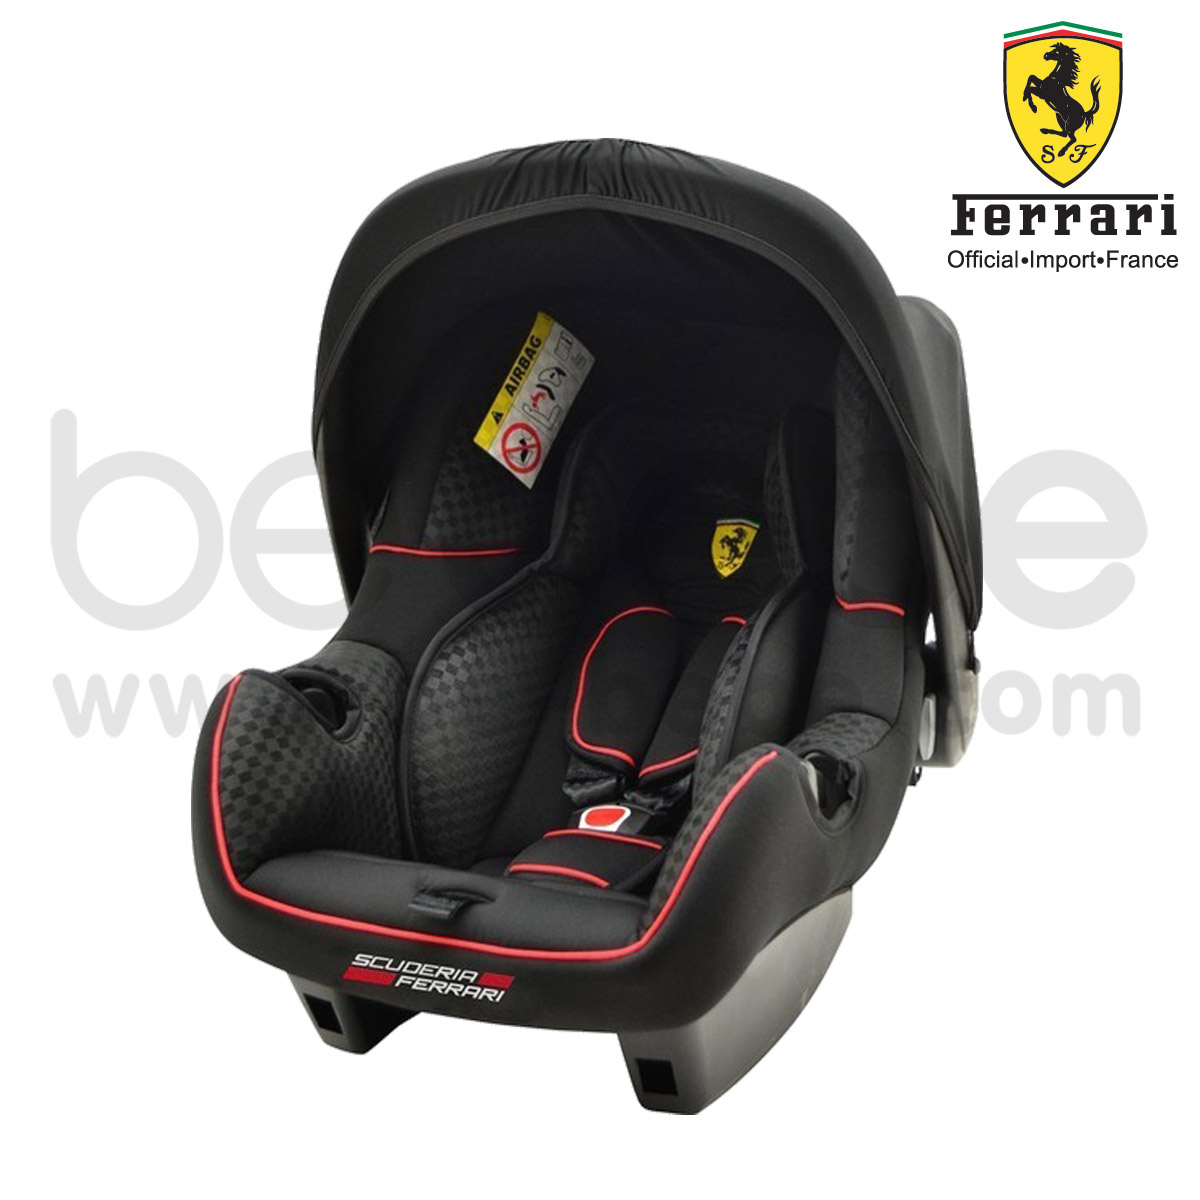  Ferrari : CarSeat Be One (Black)+Stroller P7 Canne Furia